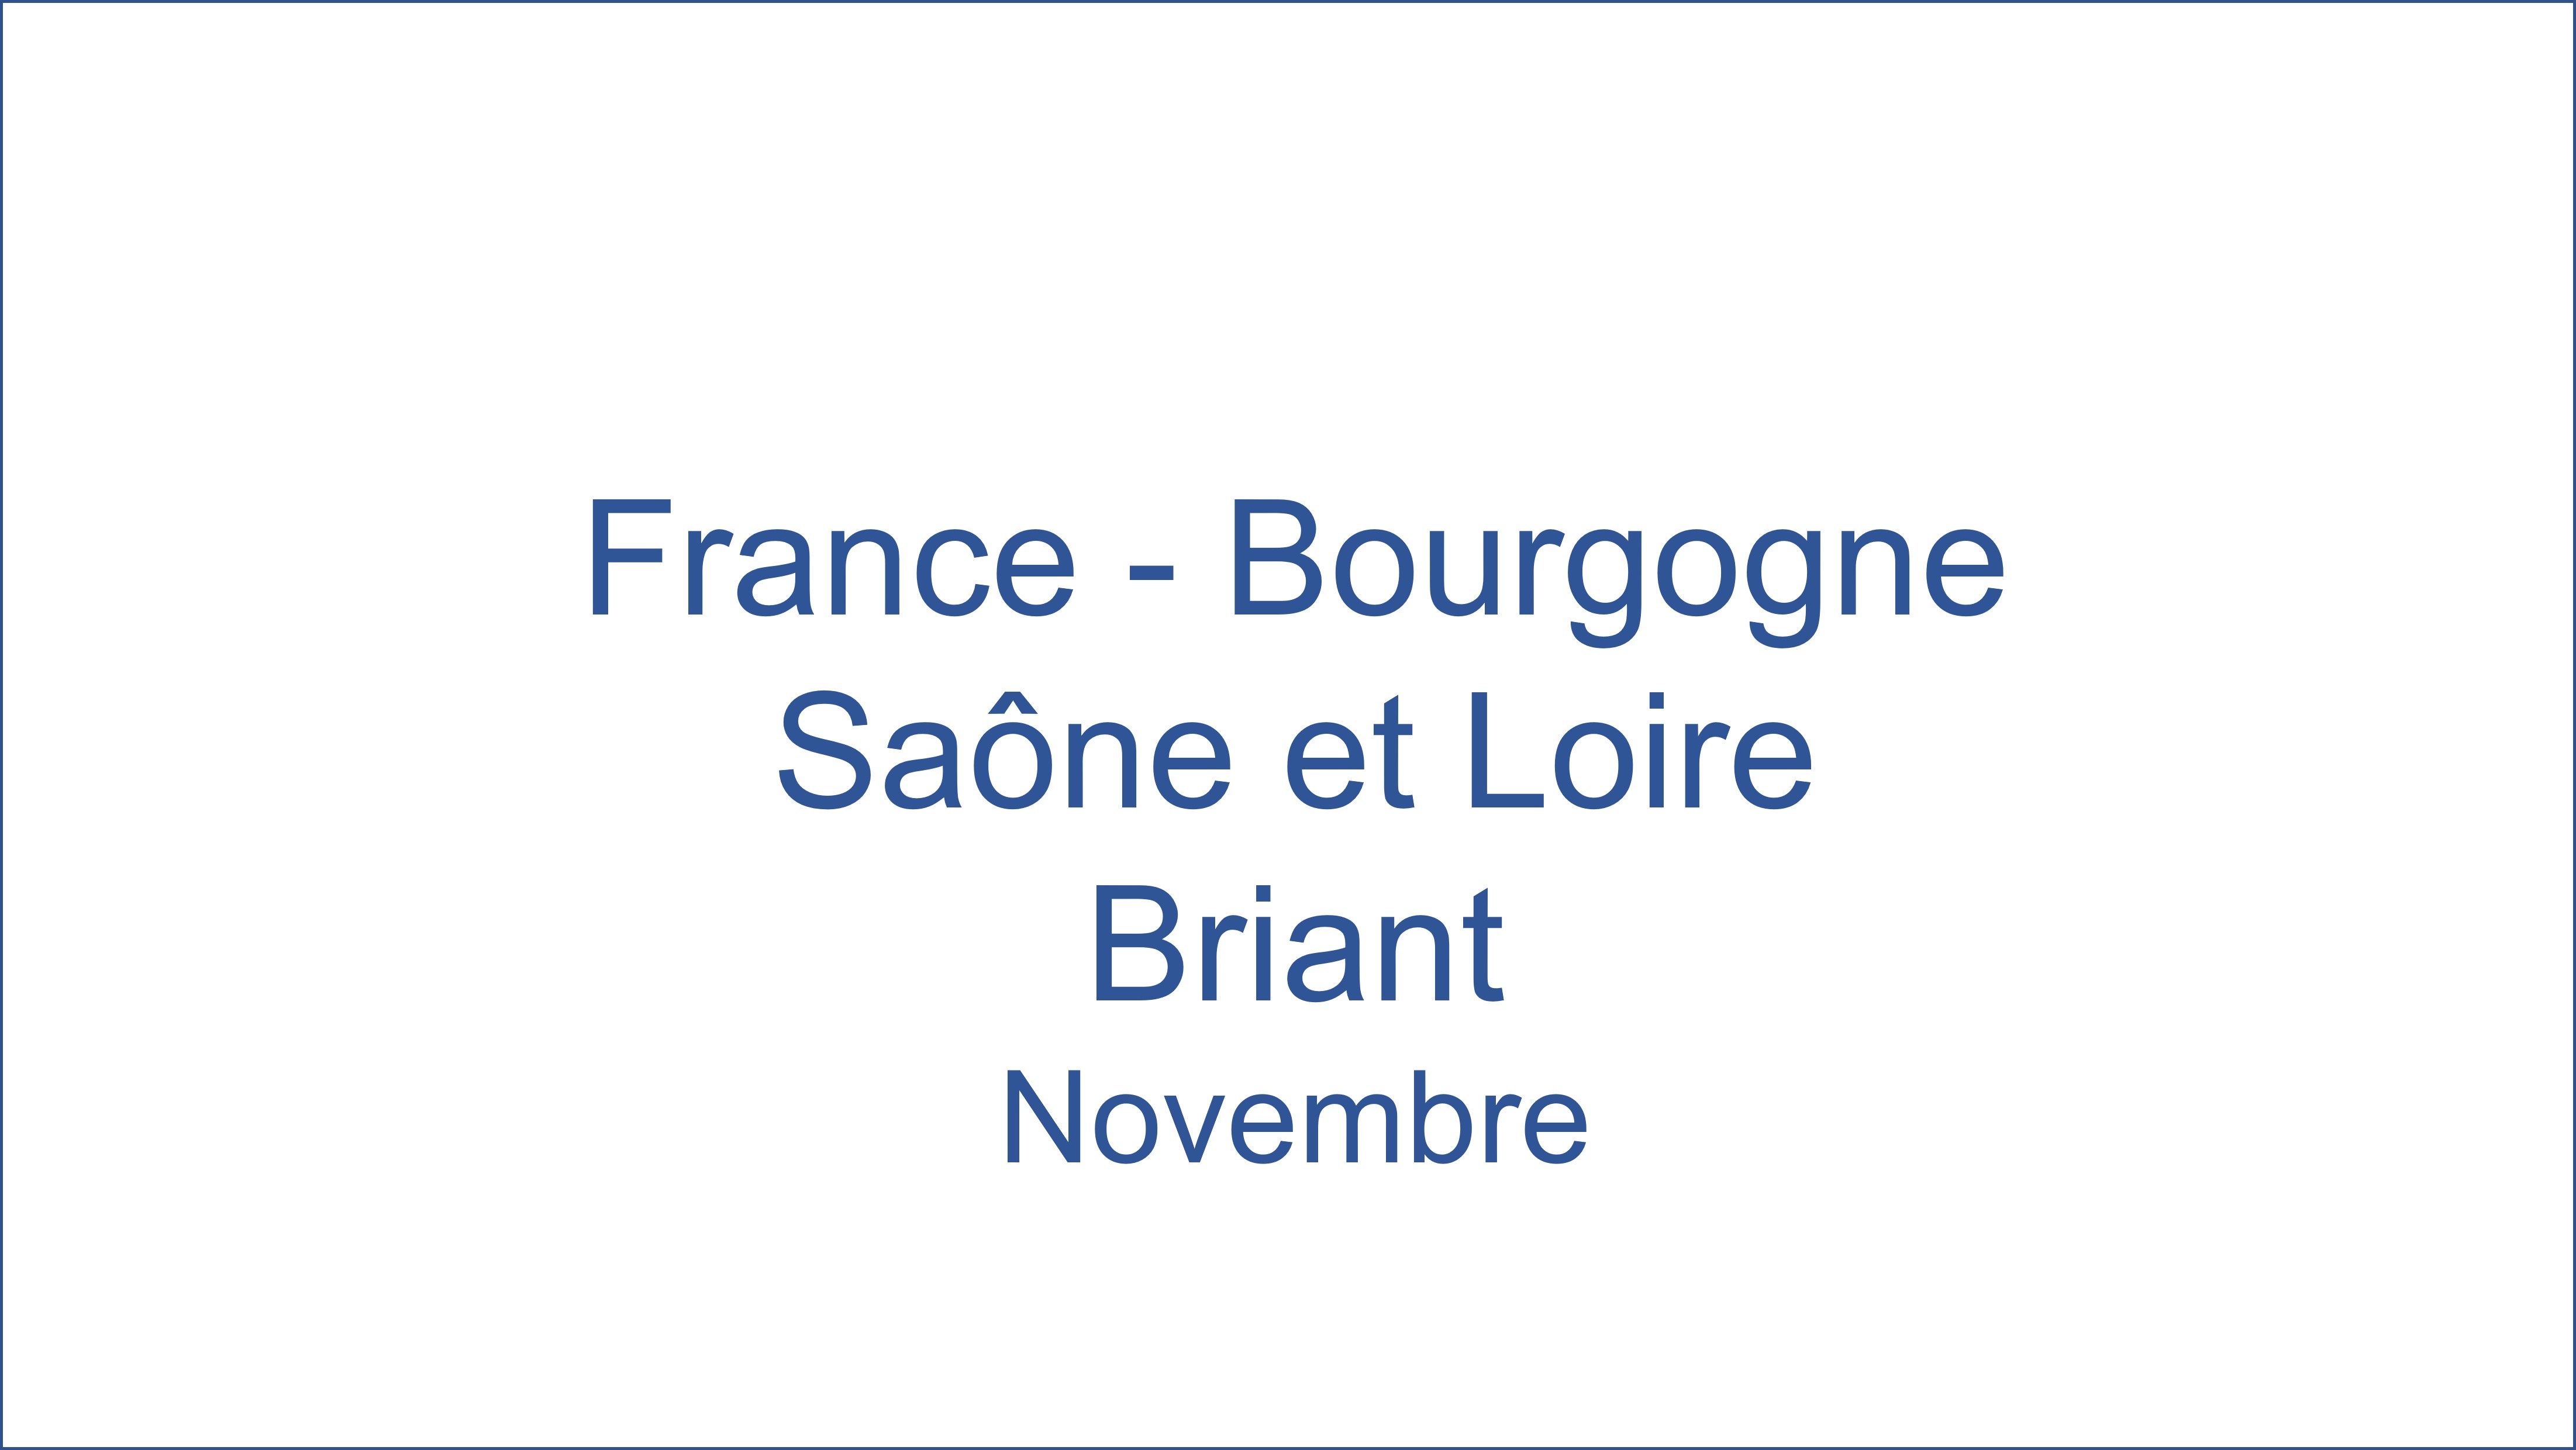 France - Bourgogne Sa�ne et Loire Briant 11/2021